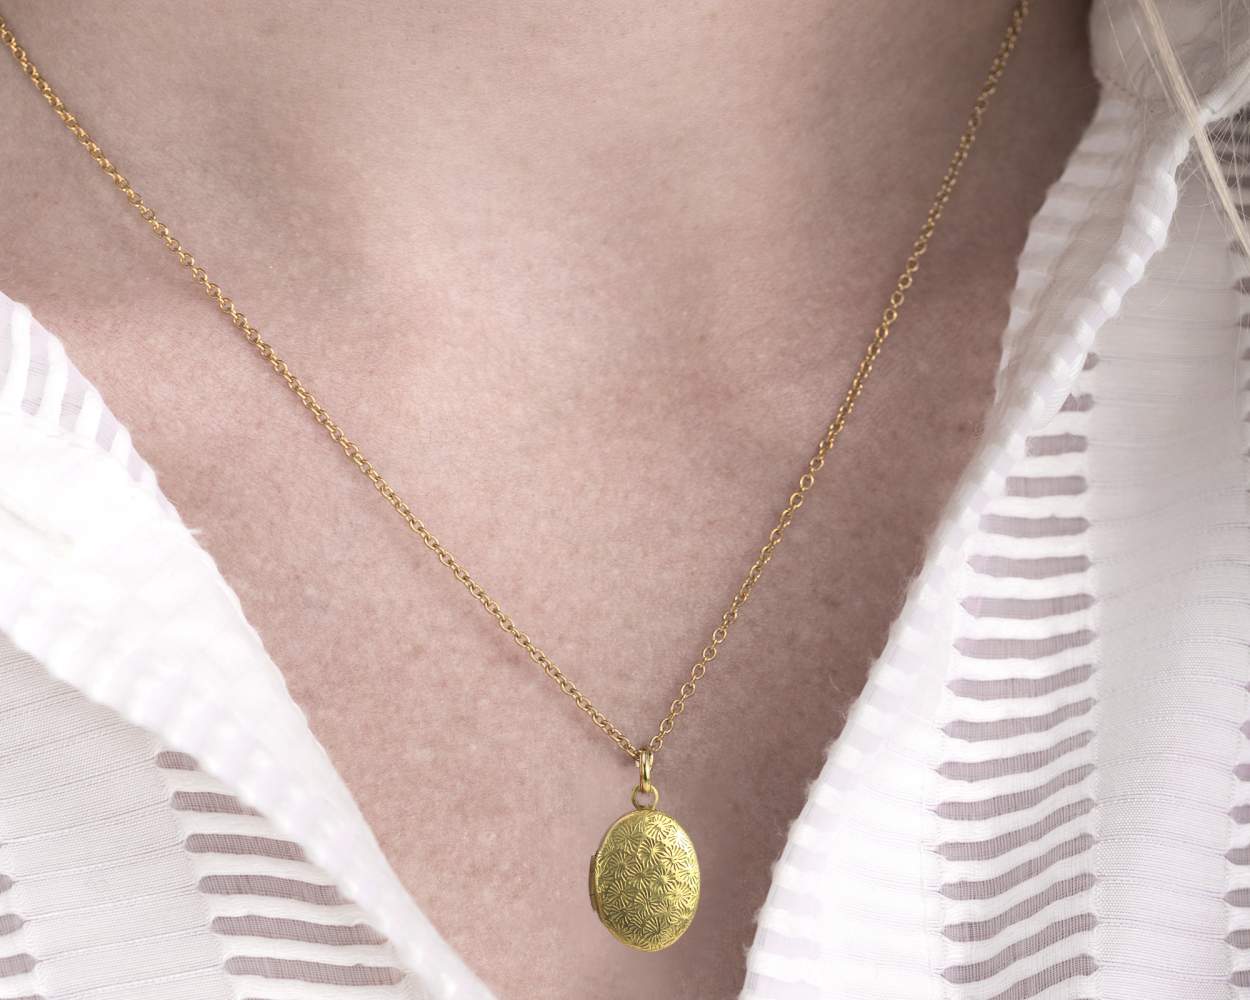 Tiny gold locket necklace.